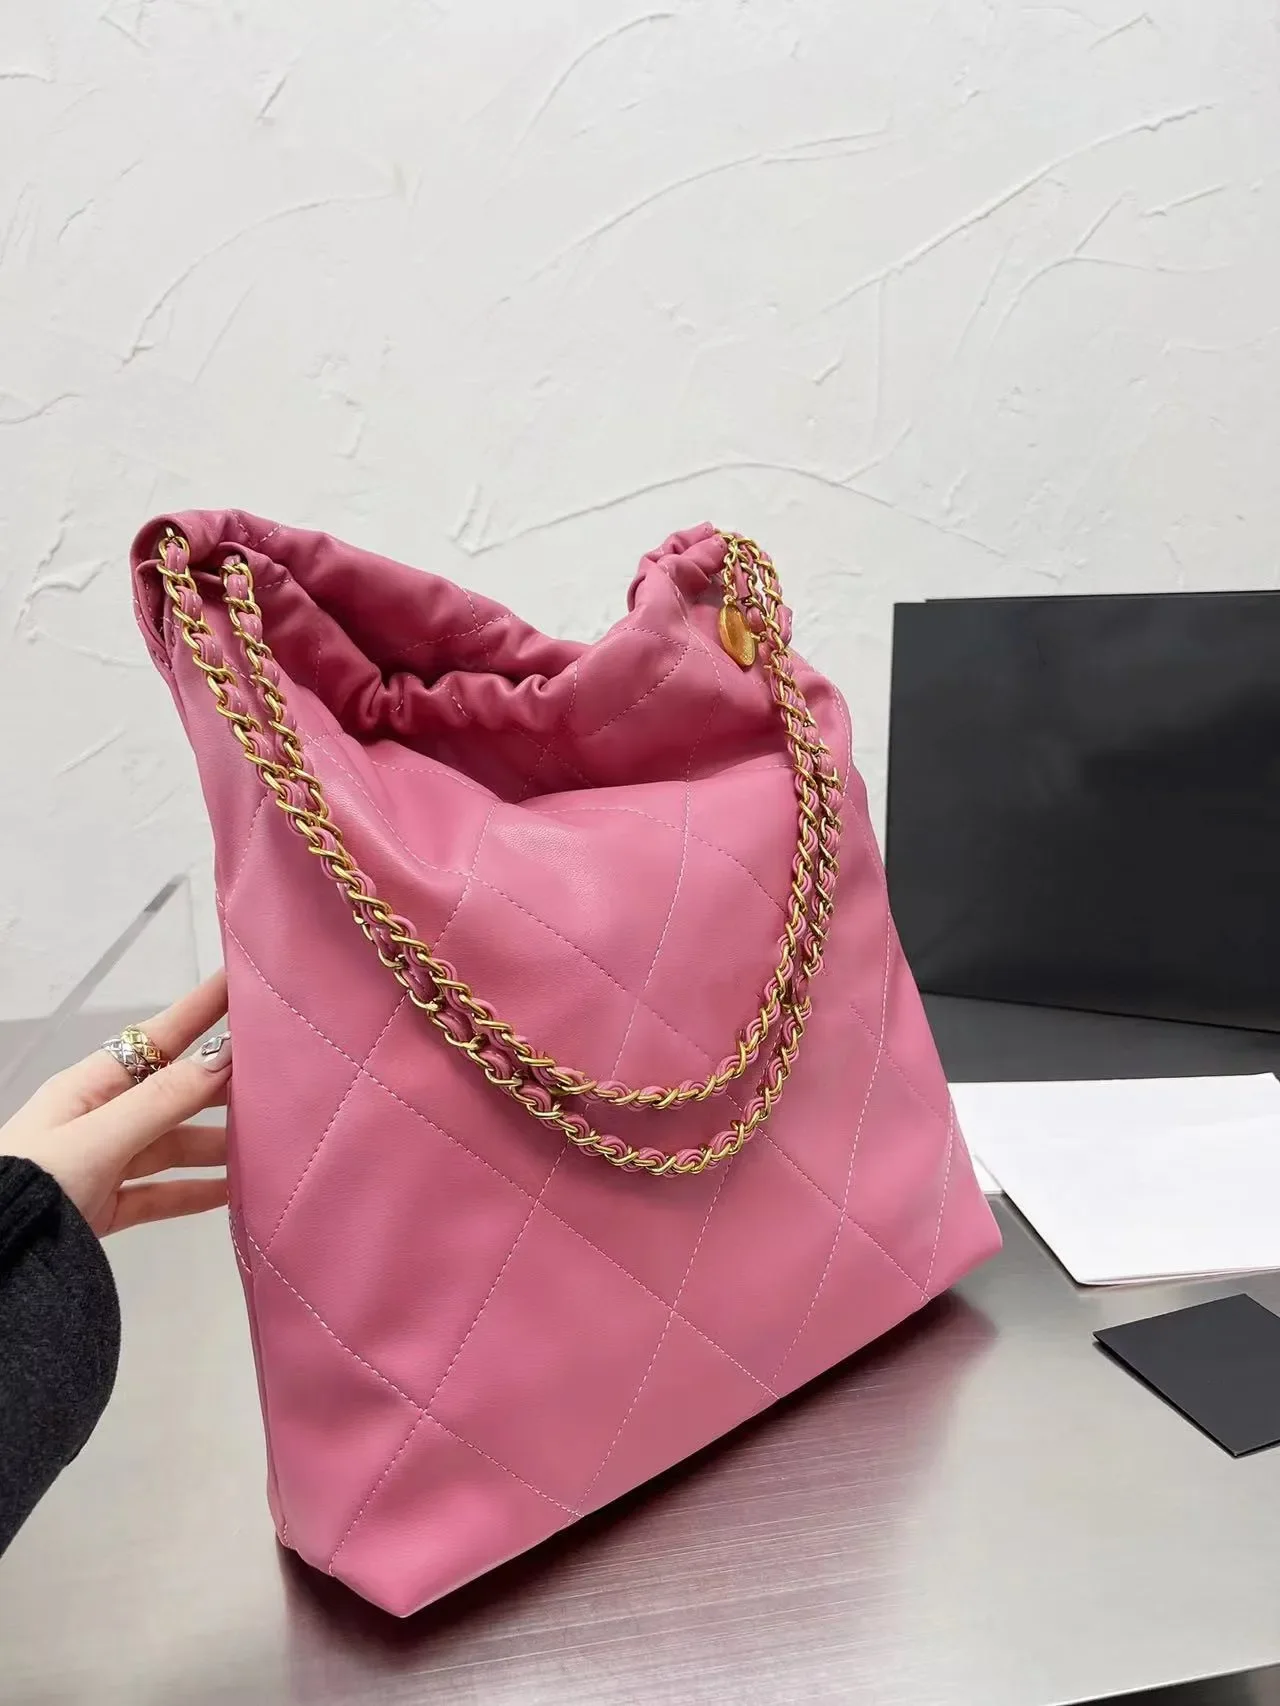 

Женская сумка для покупок оптовая продажа дамских сумочек Totes, сумка высокого качества, модные большие пляжные сумки, дизайнерские дорожные сумки через плечо